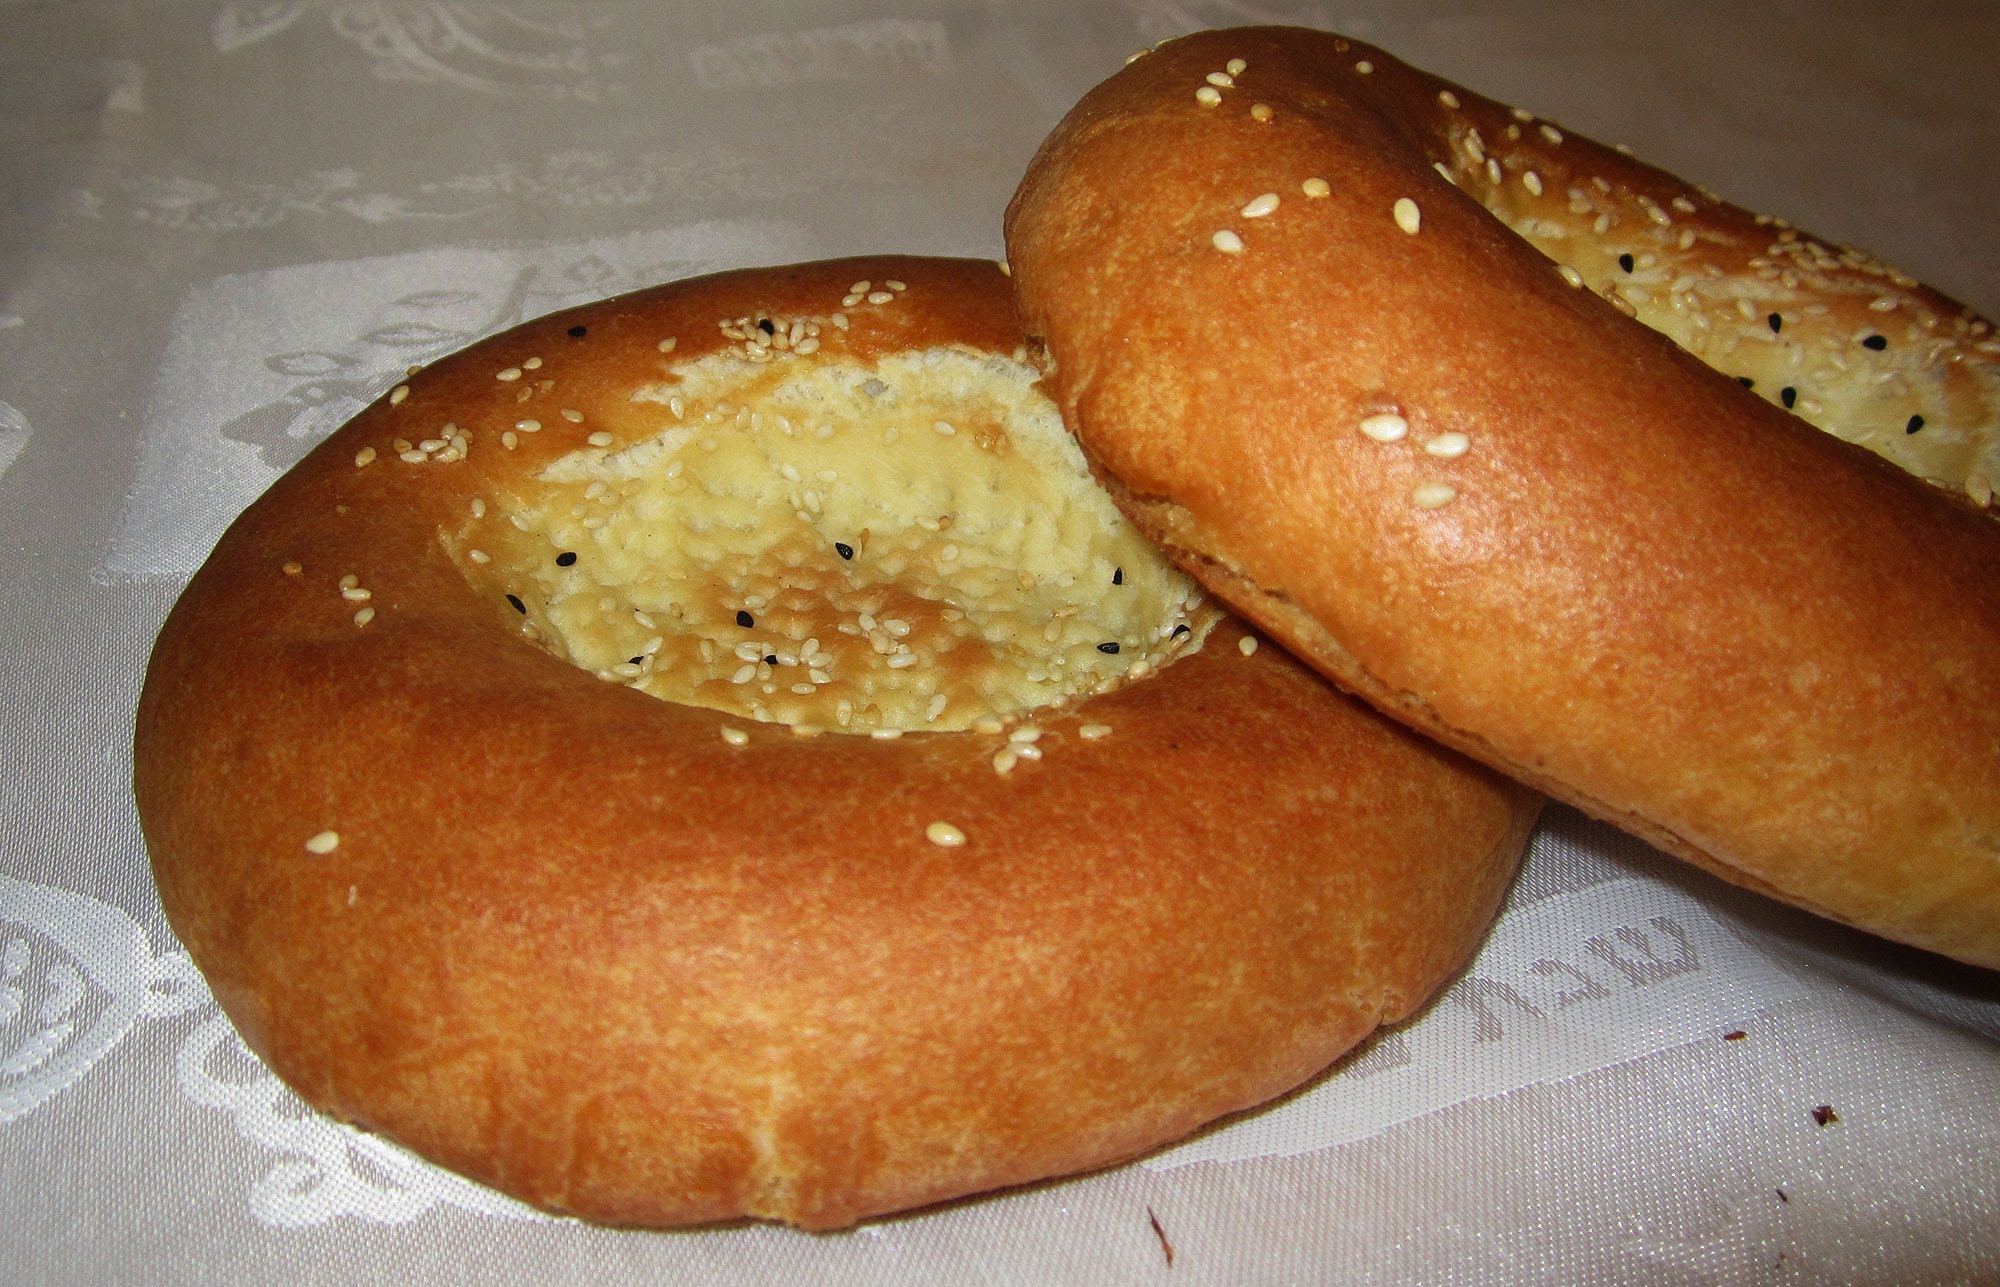 לחם בוכרי.jpg